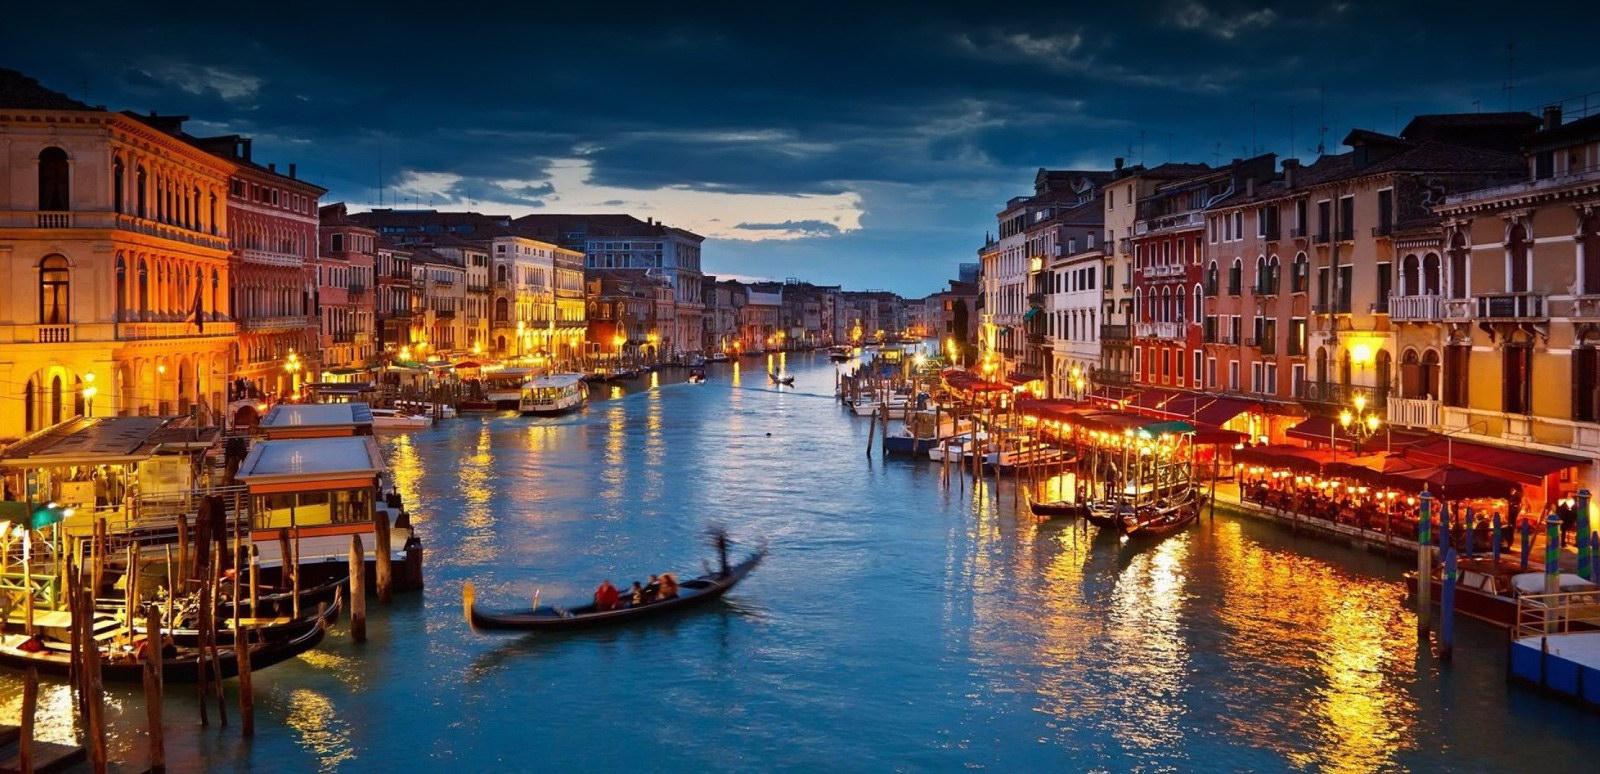 ทัวร์อิตาลี - ล่องเรือกอนโดล่าแห่งเวนิสสุดโรแมนดิก